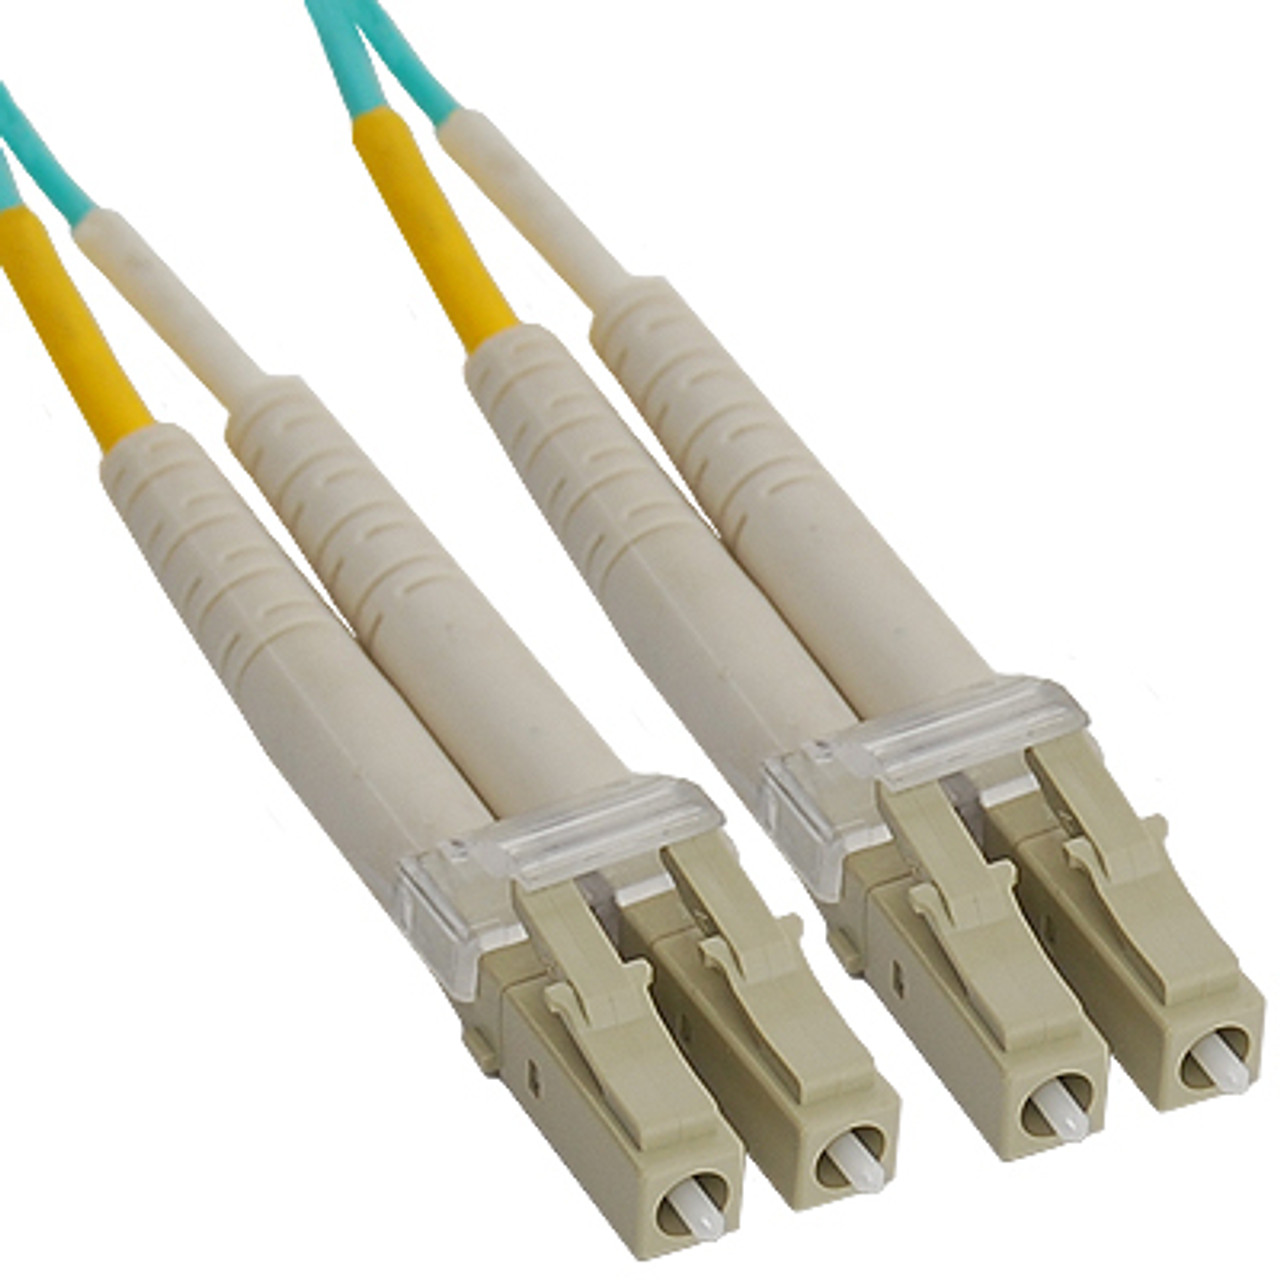 LC Duplex Multimode 50/125 (OM3) Fiber Optic Patch Cable 10Gb in Aqua - 7M